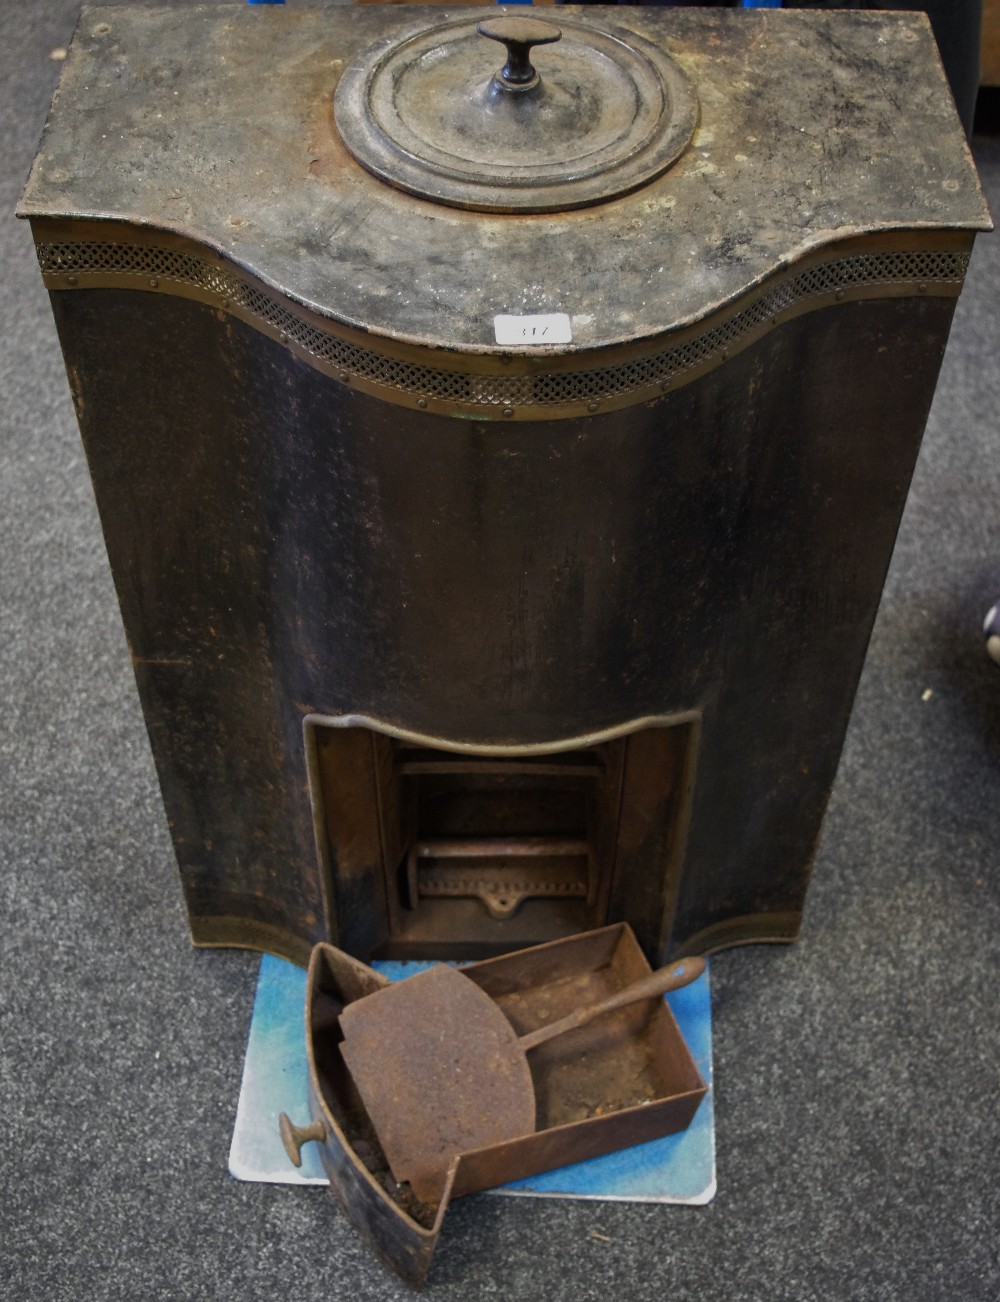 A Pitradsto cast iron stove